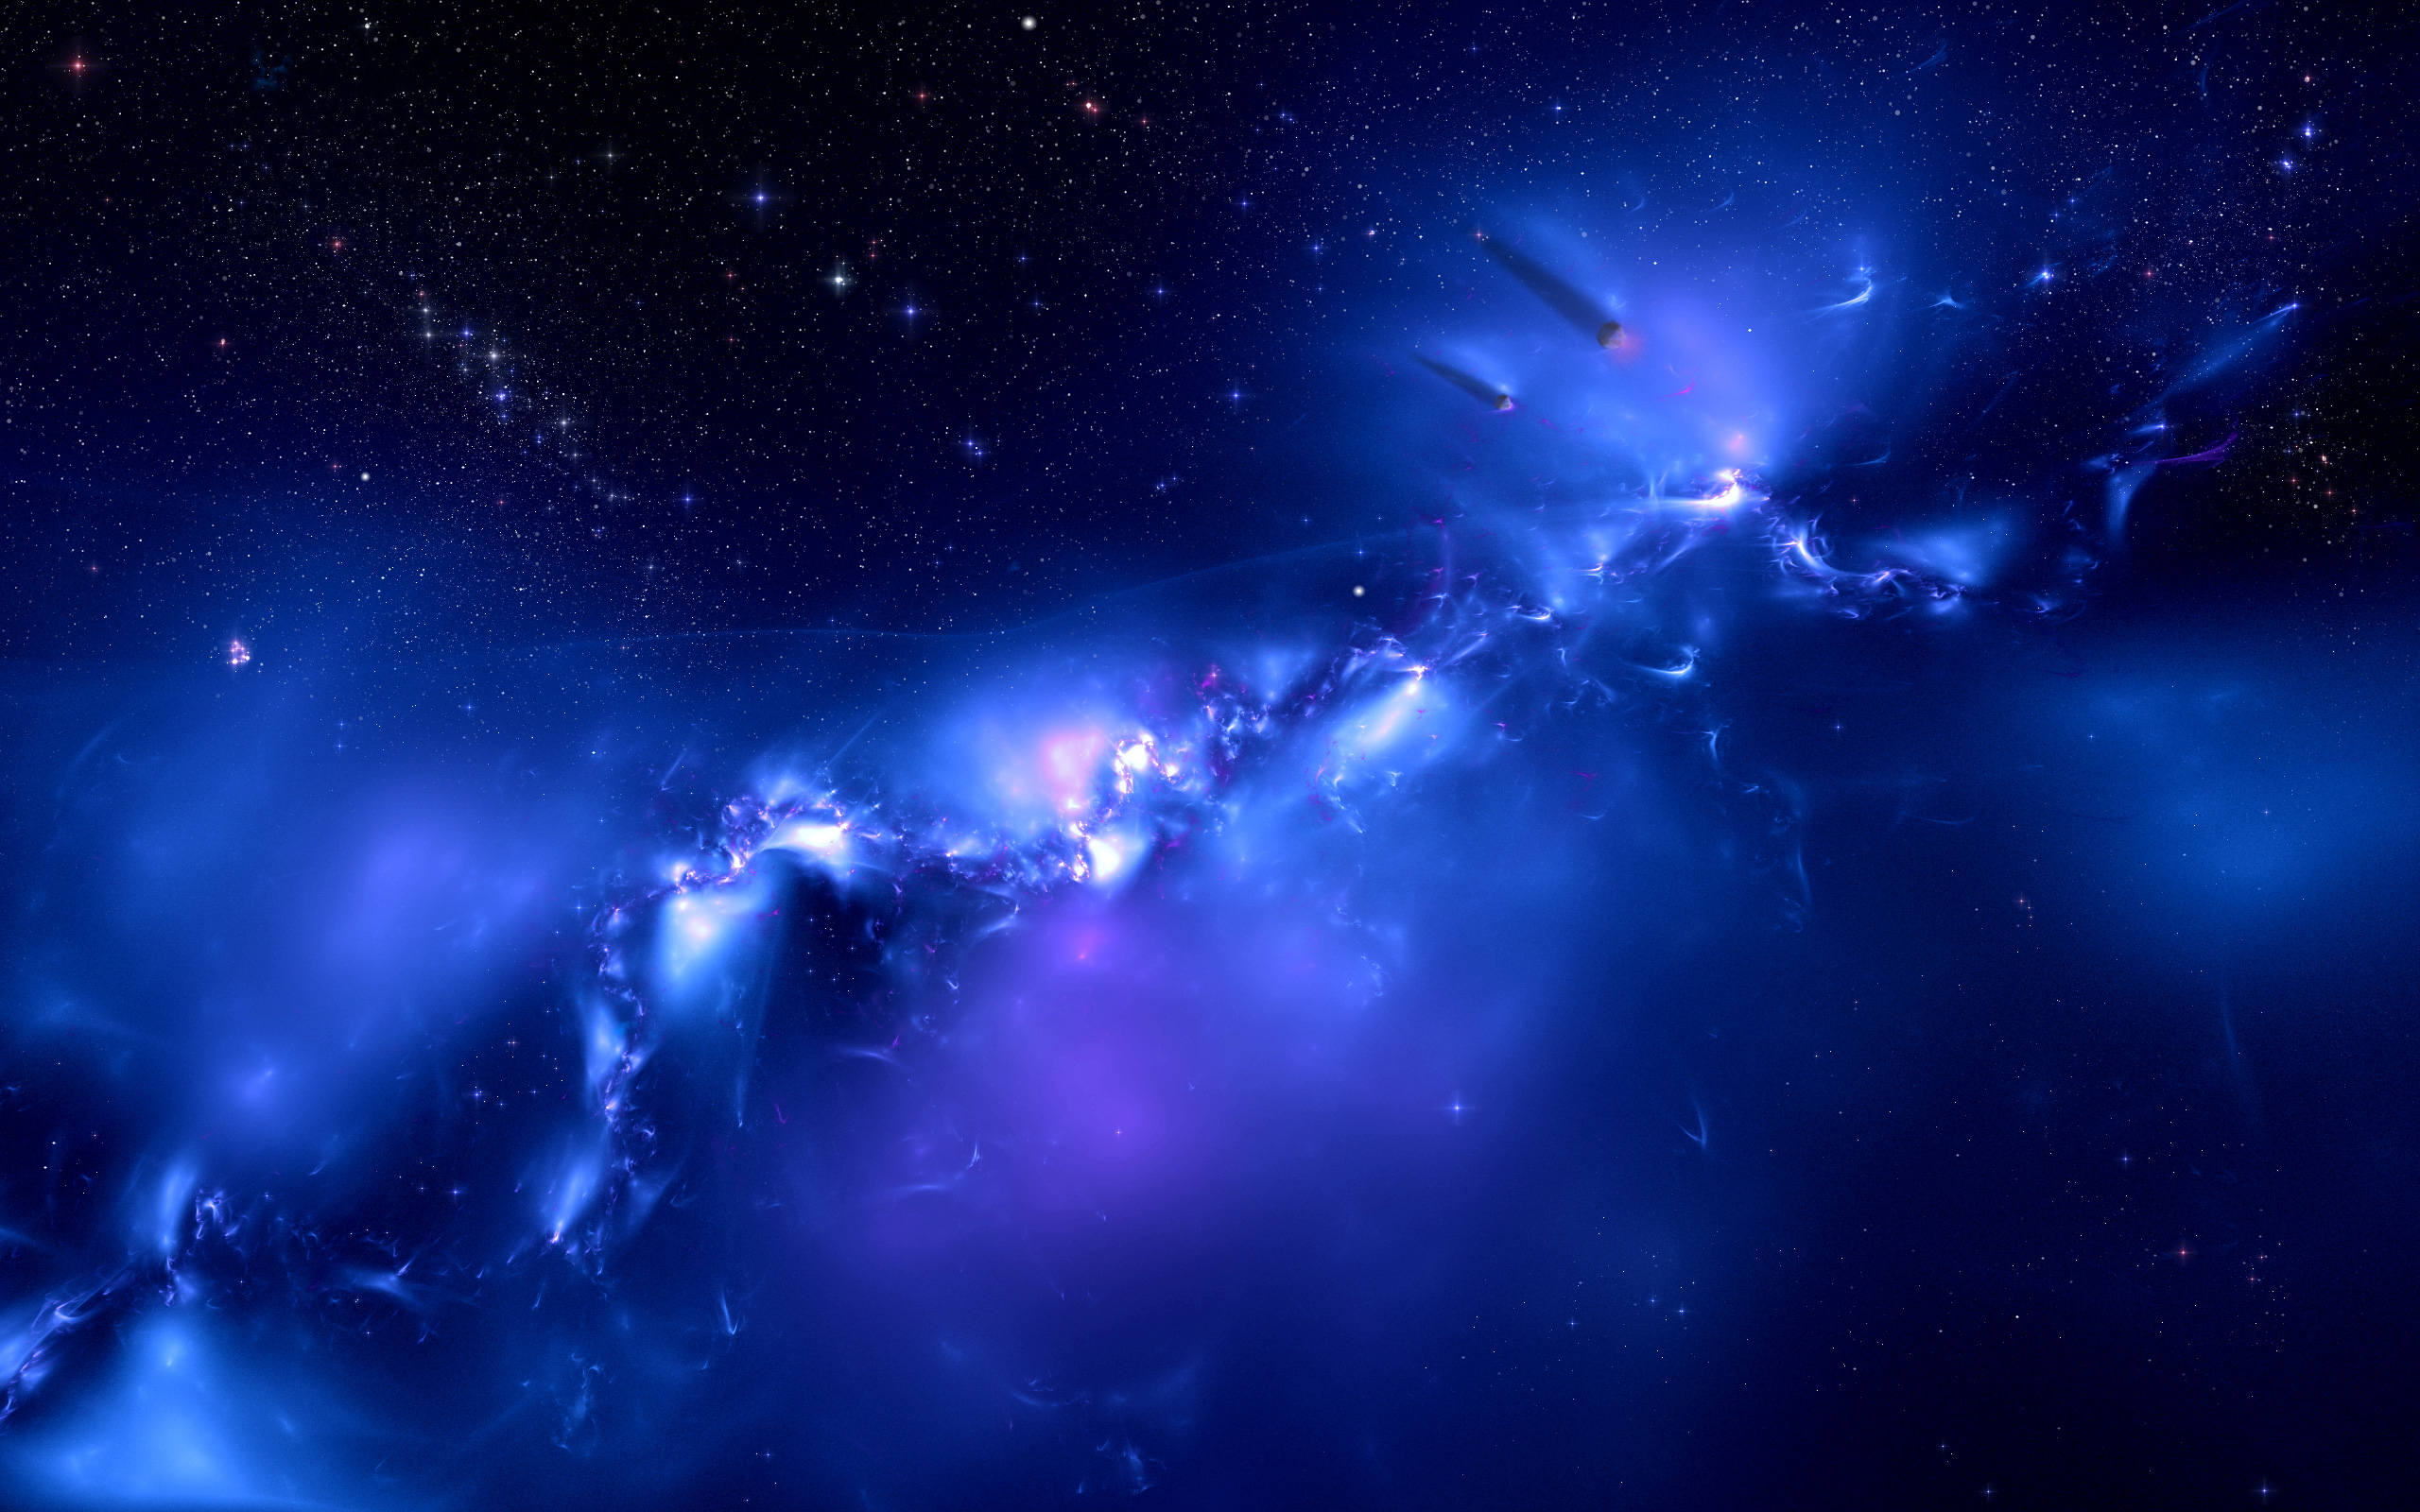 Bạn đang tìm kiếm một bức hình nền thiên hà đại dương màu xanh tươi sáng cho máy tính của mình? Không cần tìm đâu xa, chỉ cần truy cập trang web PixelsTalk.Net và tải miễn phí hình nền thiên hà đại dương tuyệt đẹp kích thước [2560x1600] ngay hôm nay!